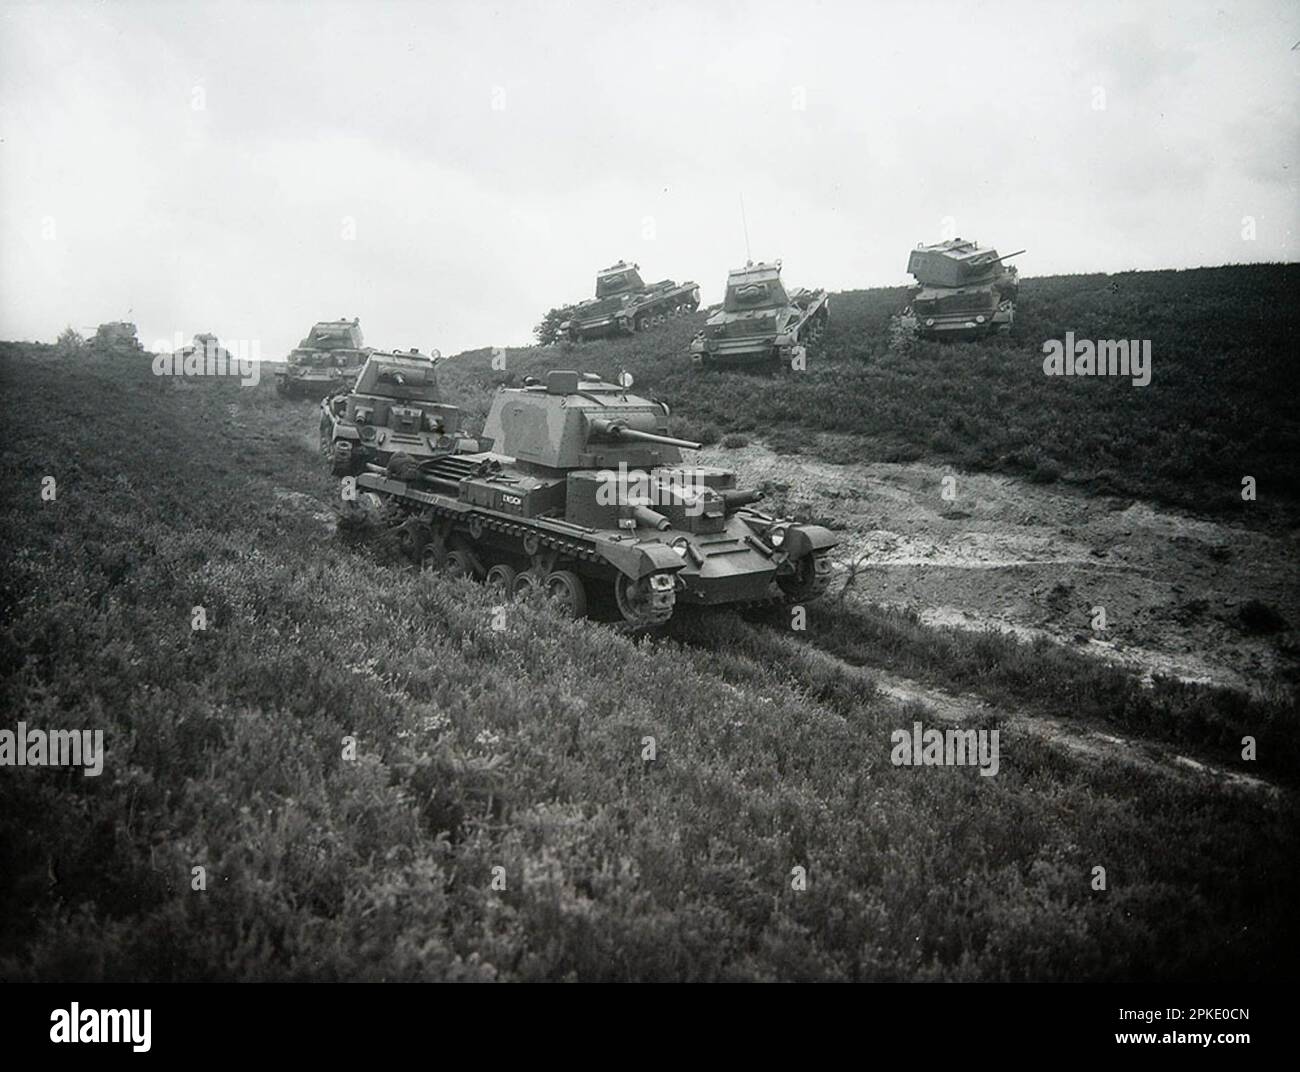 Tanks - Unidentified WW2 army image Stock Photo